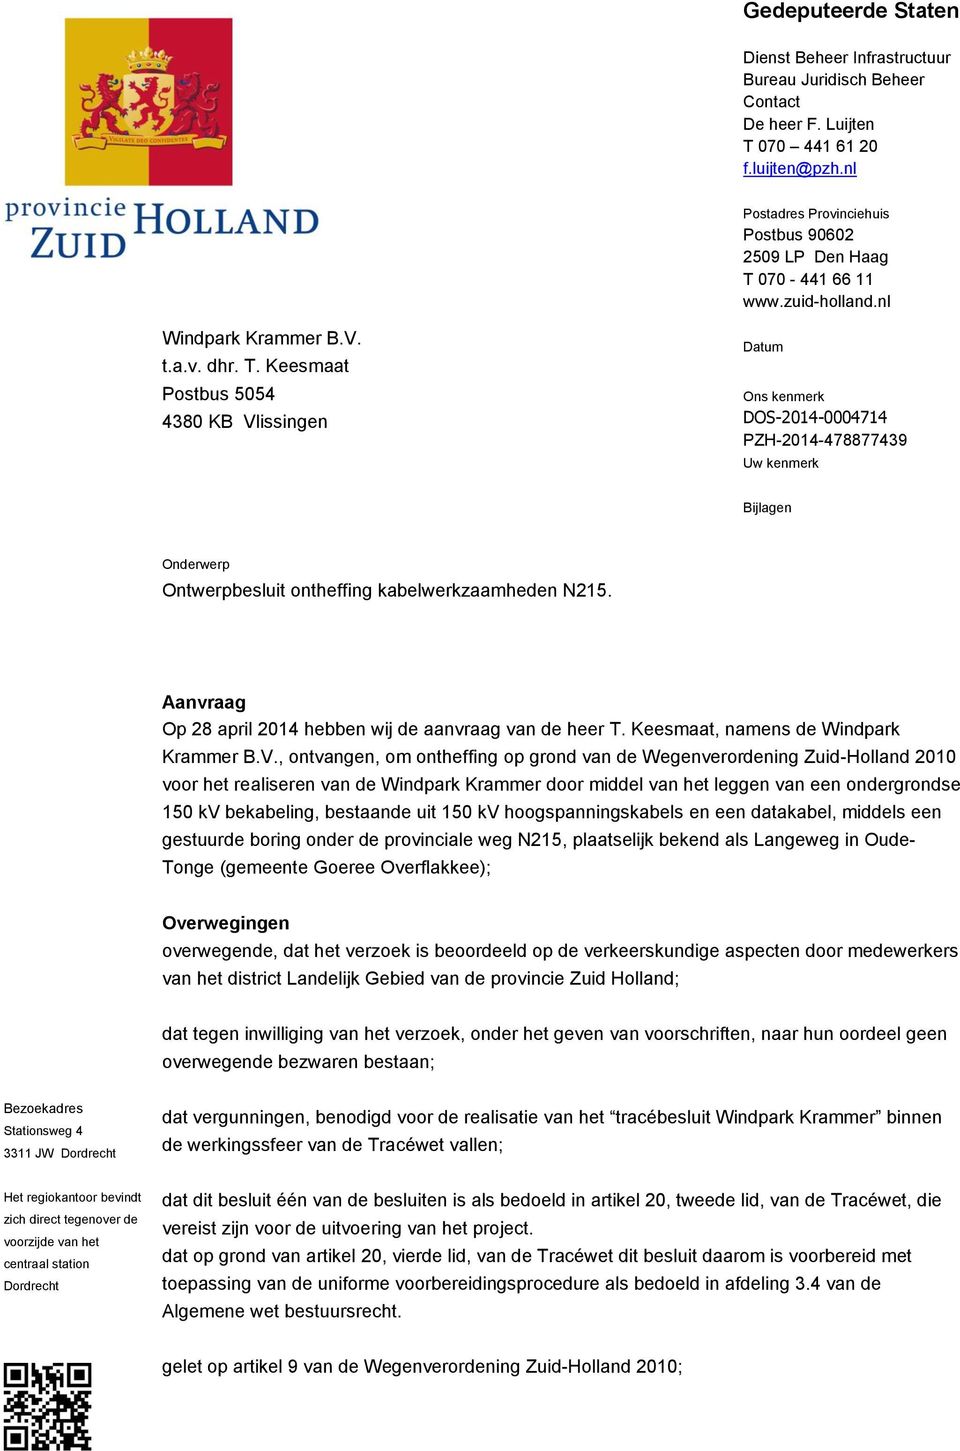 Aanvraag Op 28 april 2014 hebben wij de aanvraag van de heer T. Keesmaat, namens de Windpark Krammer B.V.